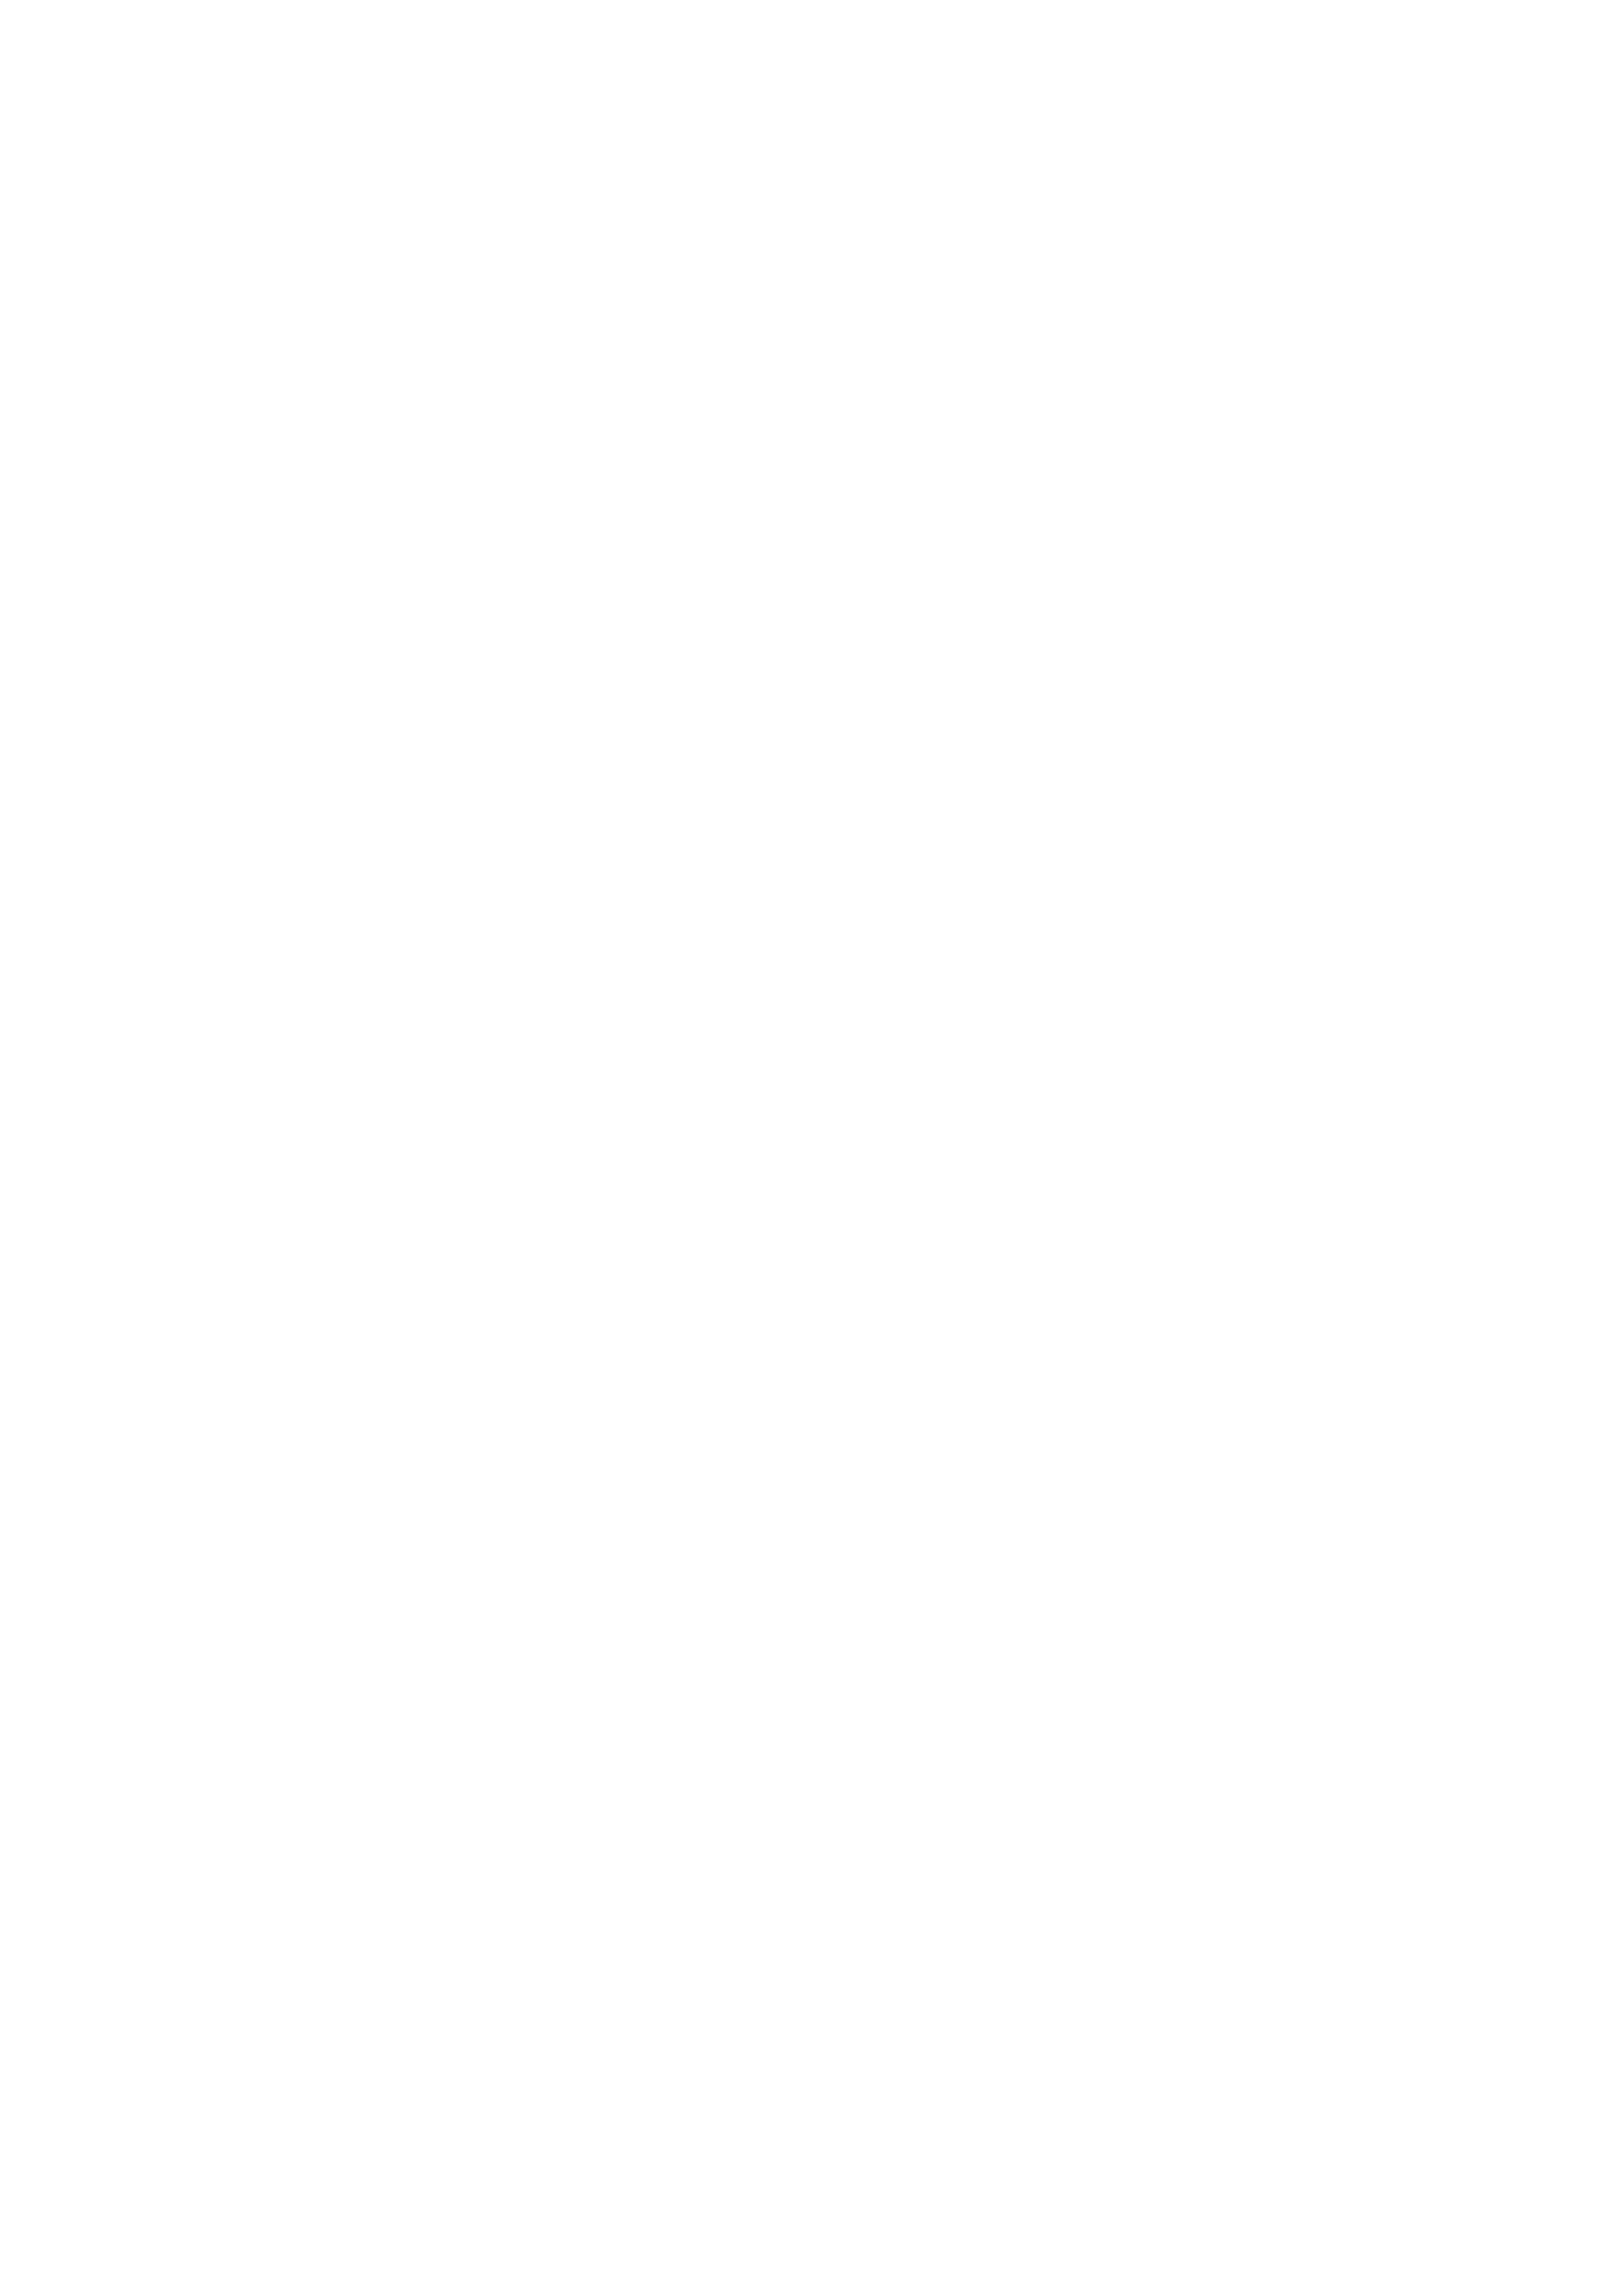 Bistum Aachen Logo